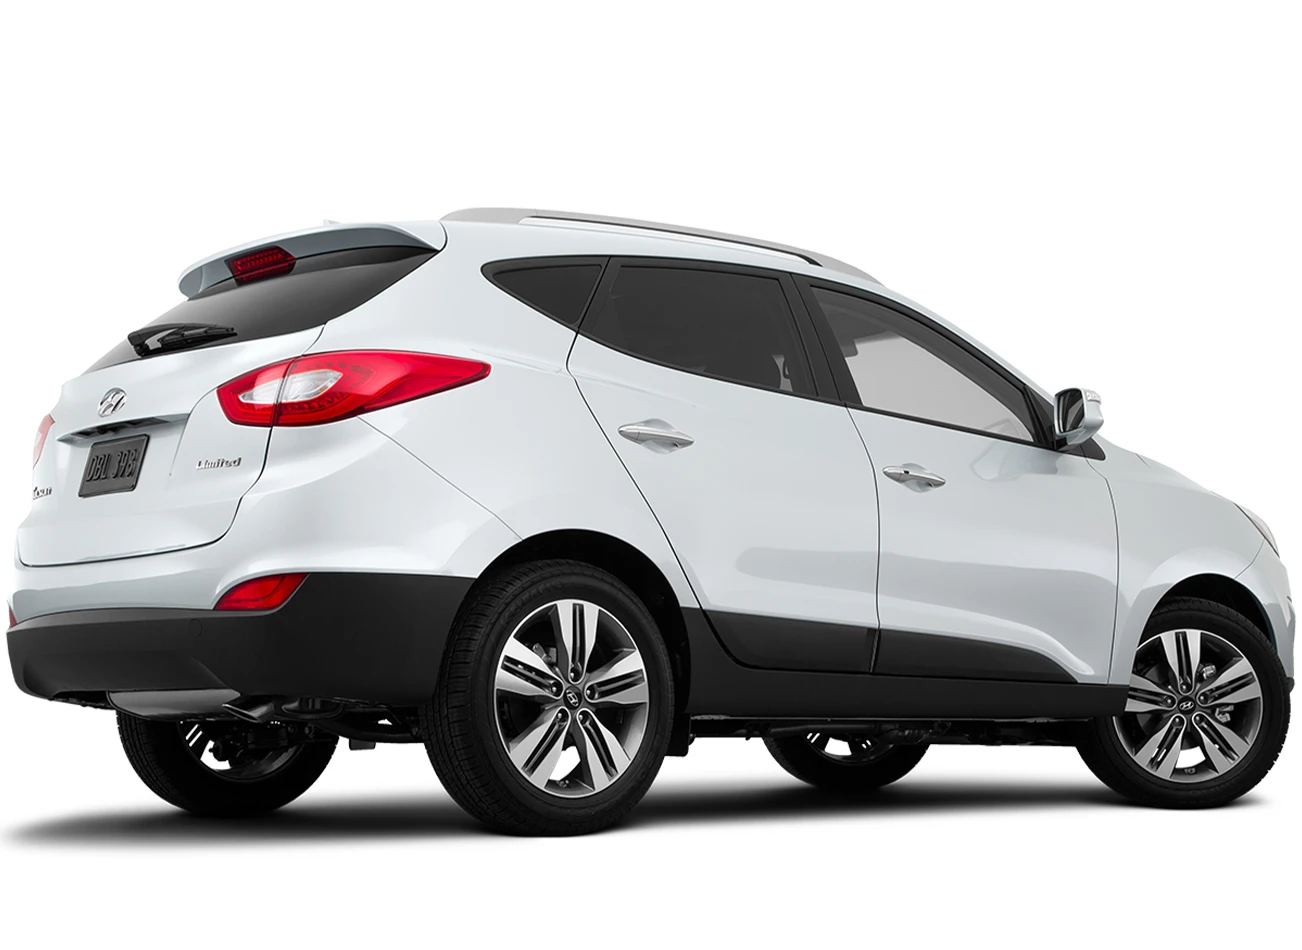 2015 Hyundai Tucson: Reviews, Photos, and More: Reasons to Buy #1 | CarMax